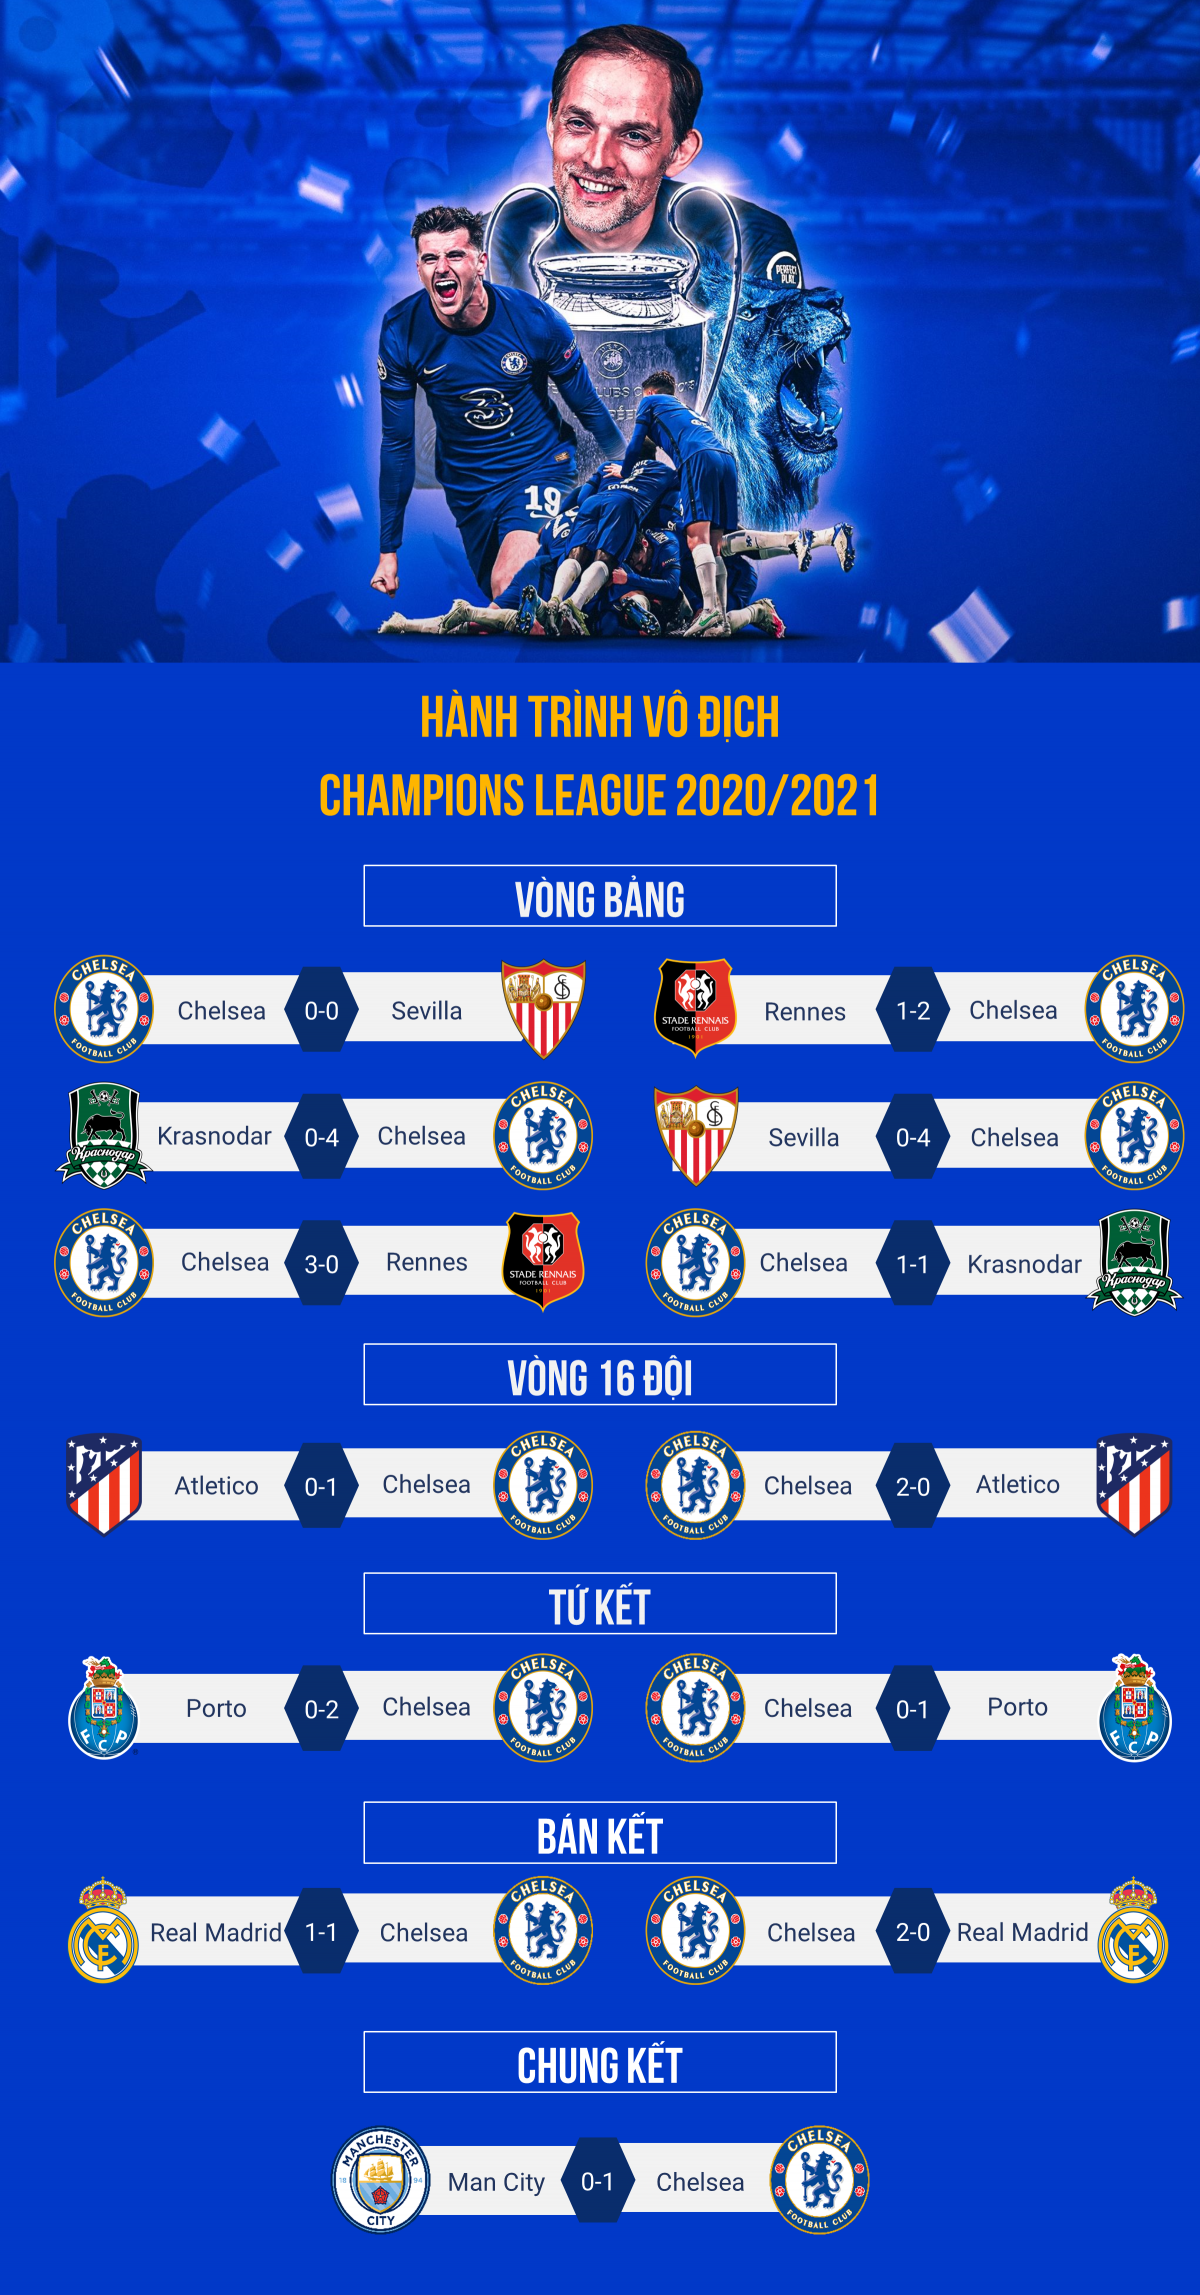 Hành trình vô địch Champions League 2020/2021 của Chelsea - Ảnh 1.